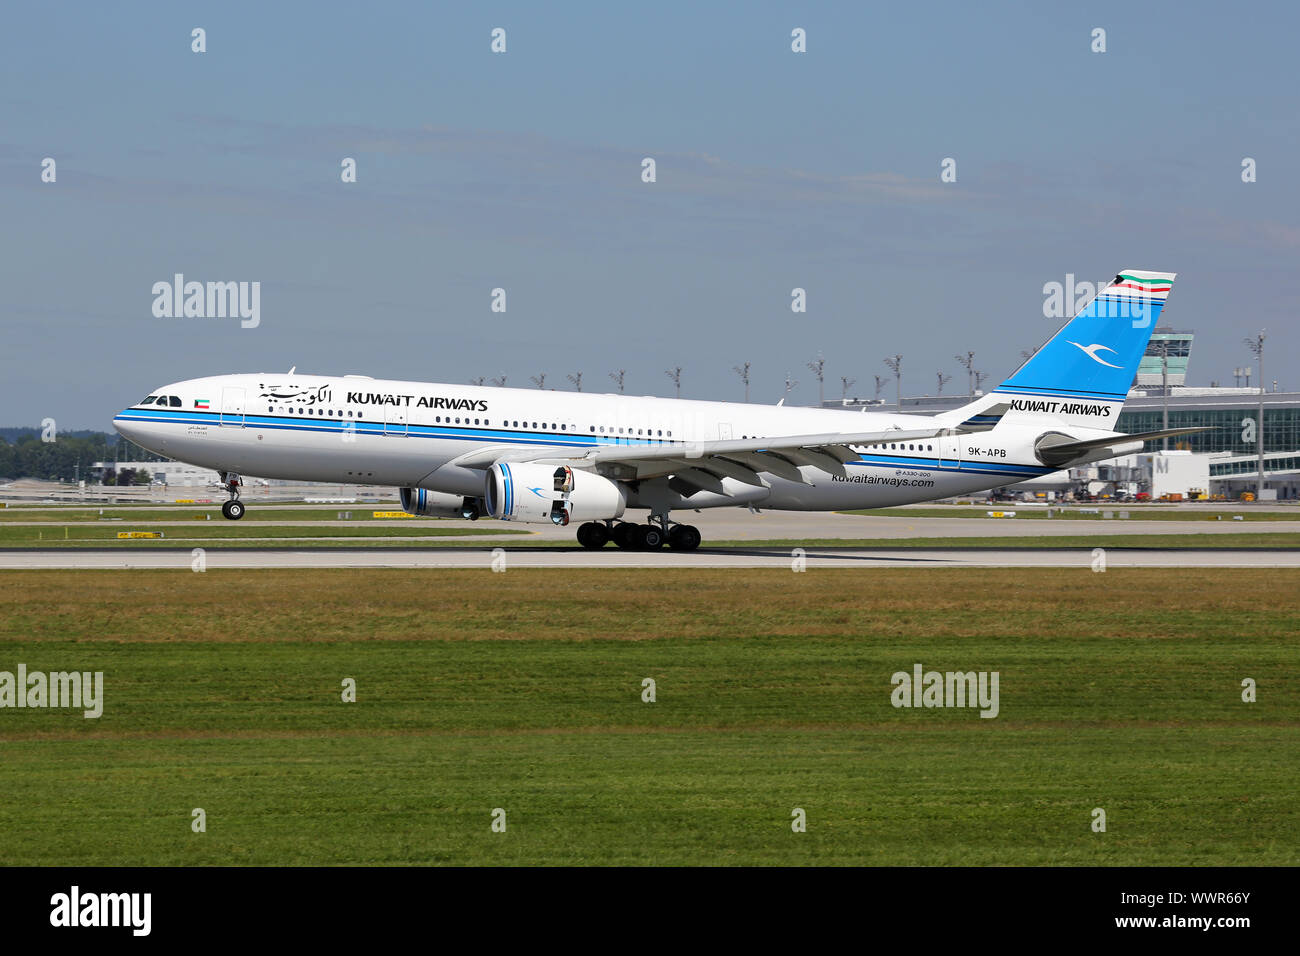 Kuwait Airways Airbus A330-200 Flugzeug Stock Photo - Alamy